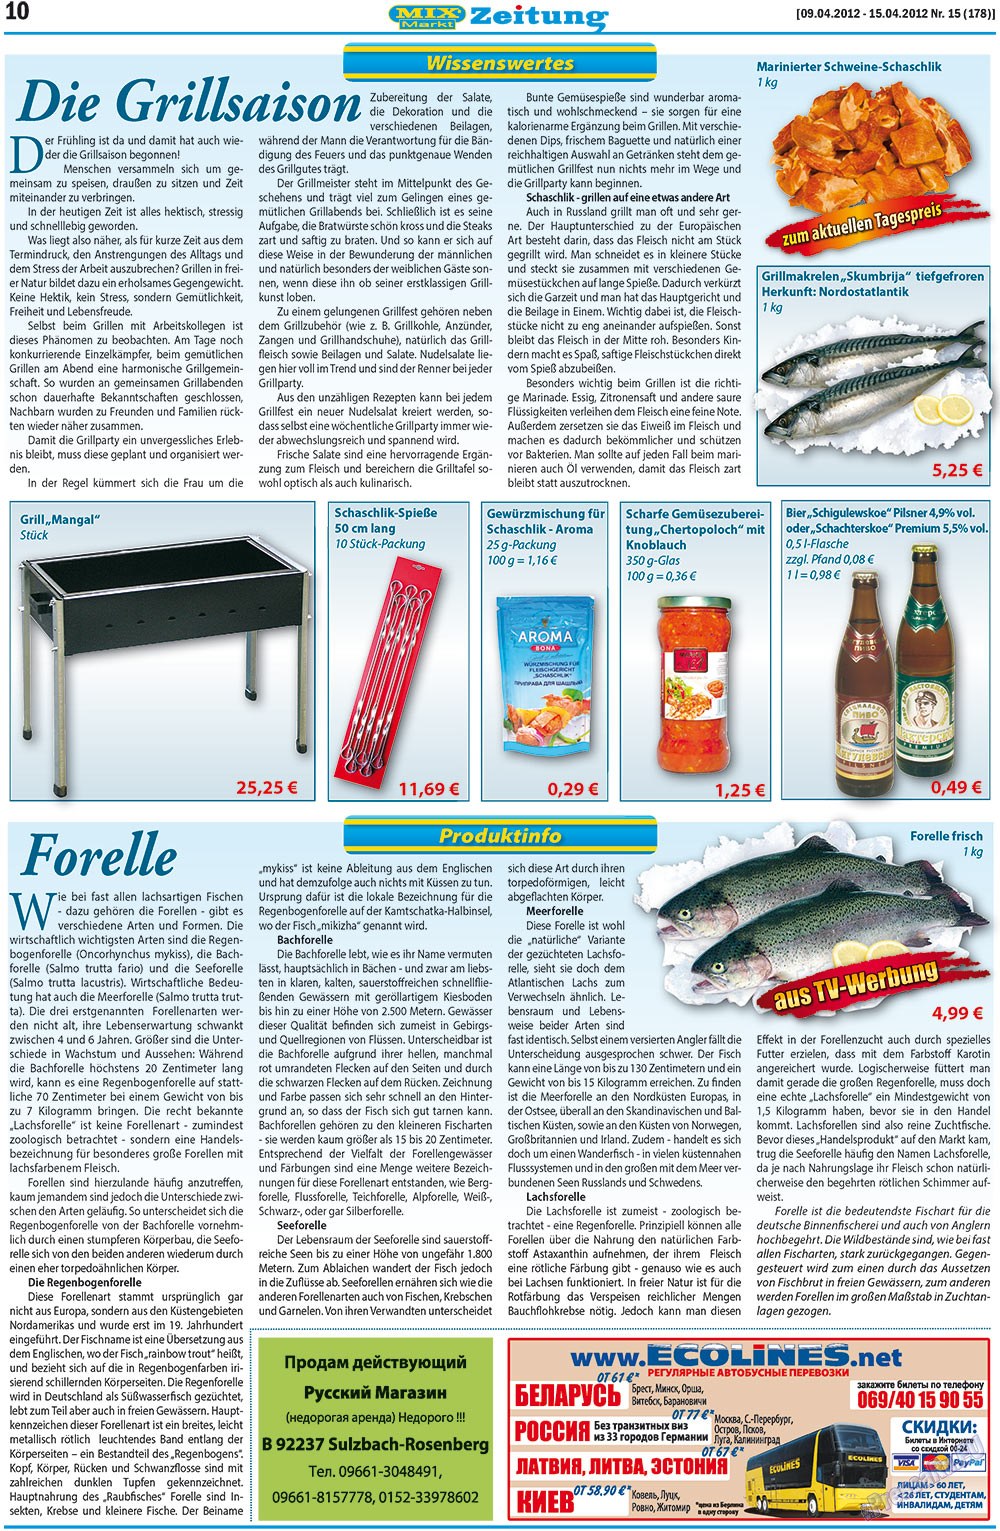 MIX-Markt Zeitung (газета). 2012 год, номер 15, стр. 10